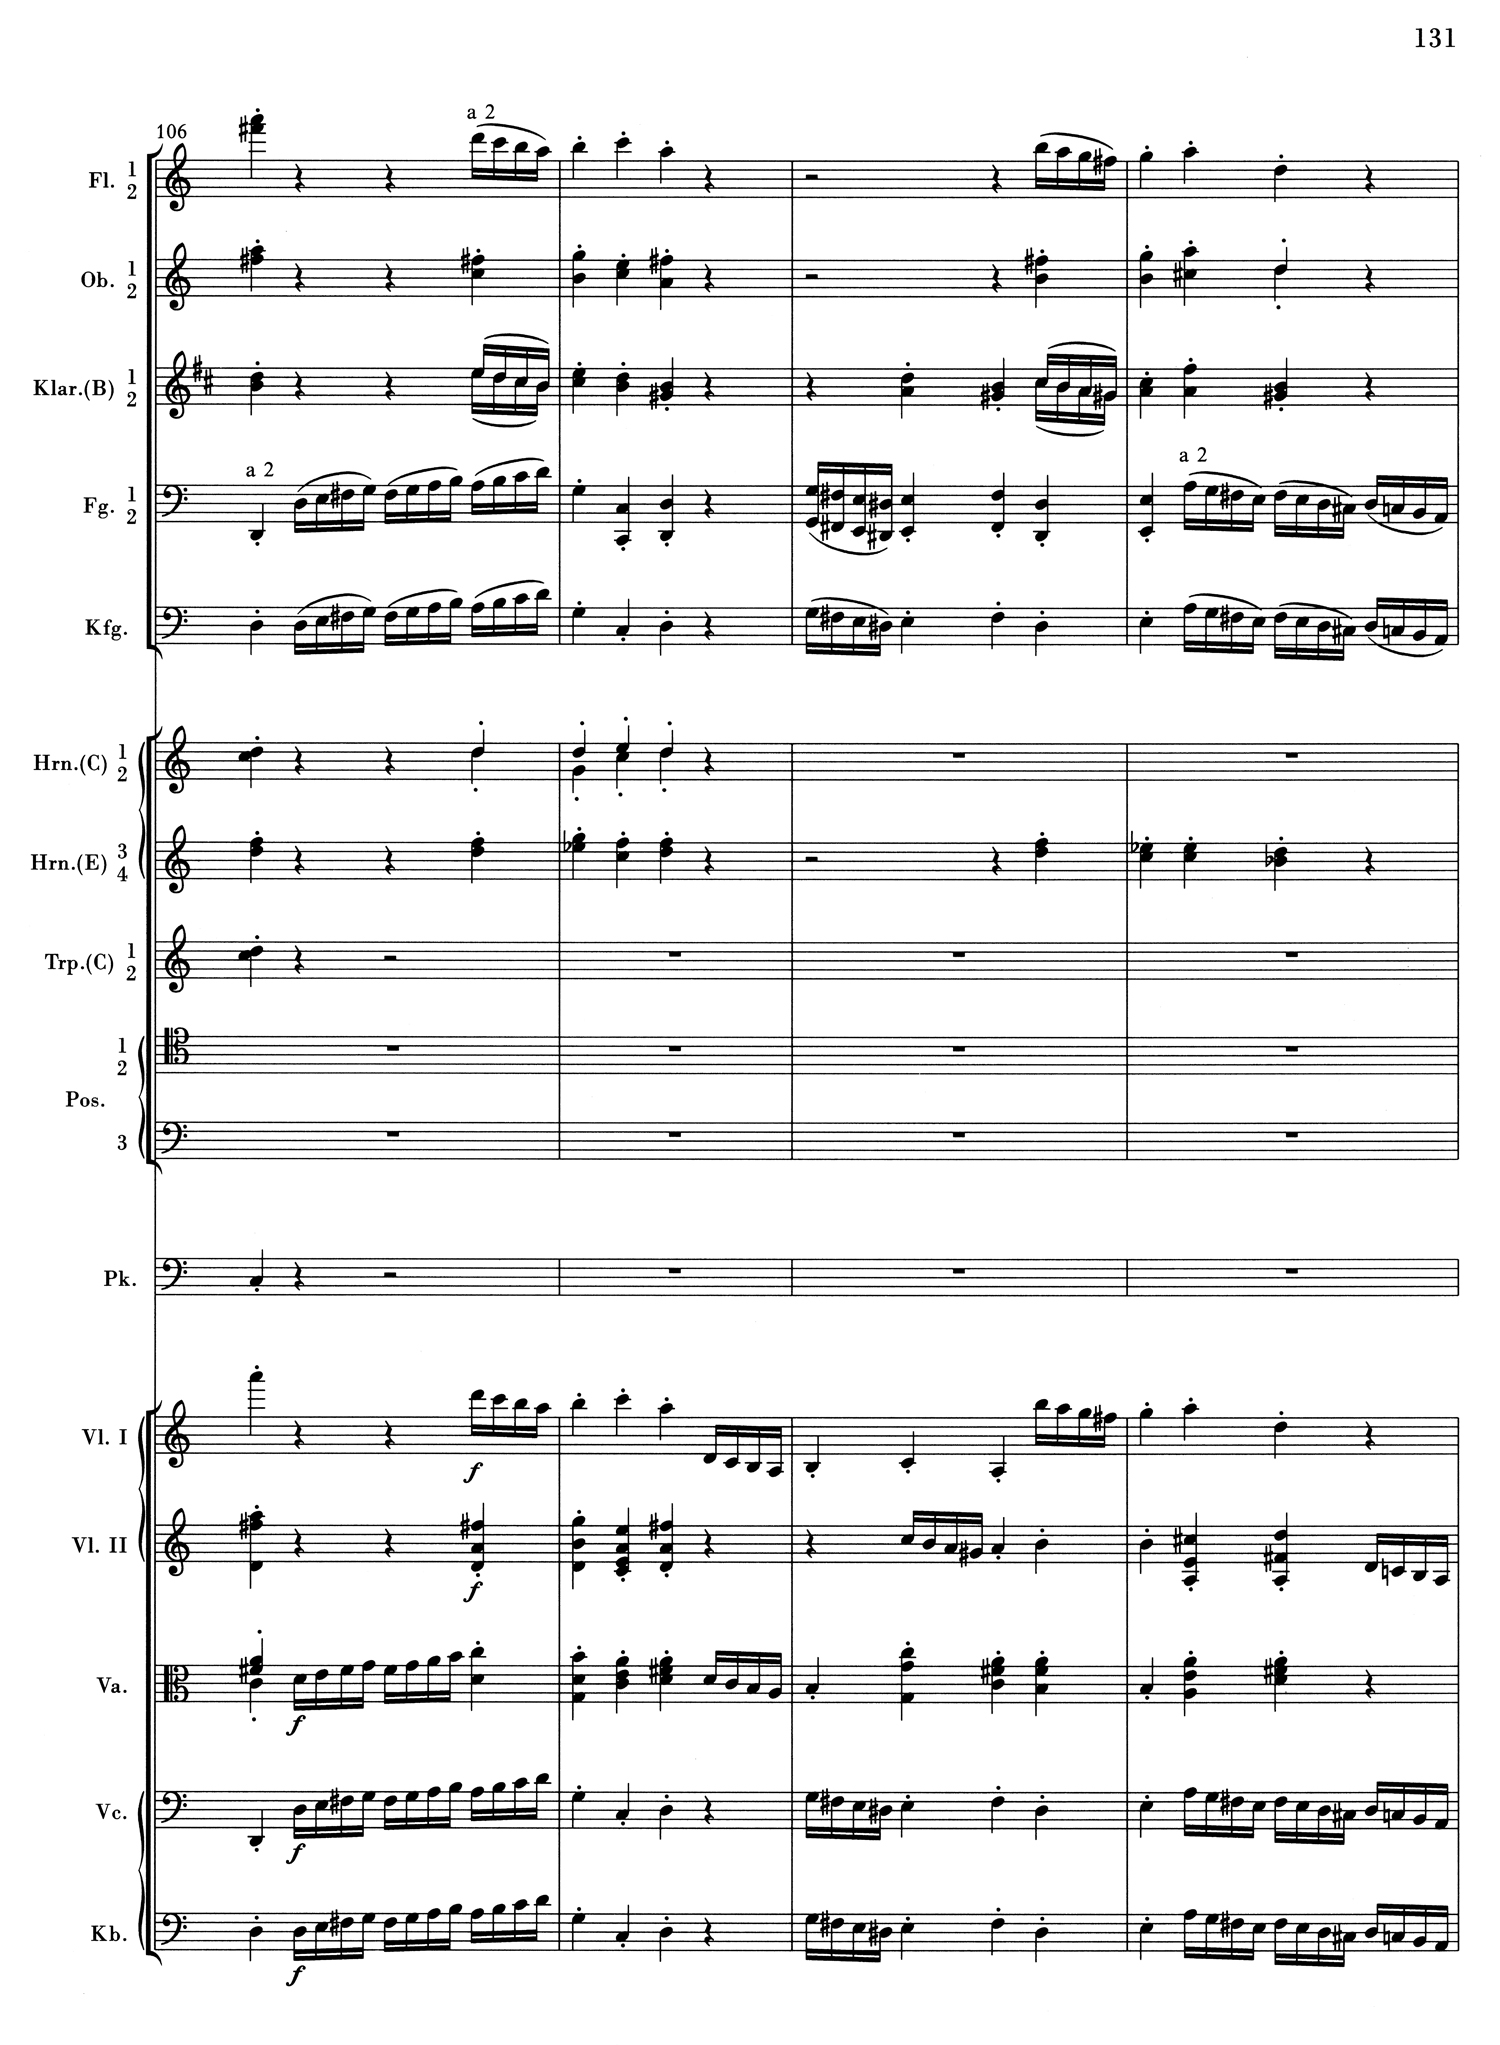 Brahms 1 Mvt 4 Score 3.jpg